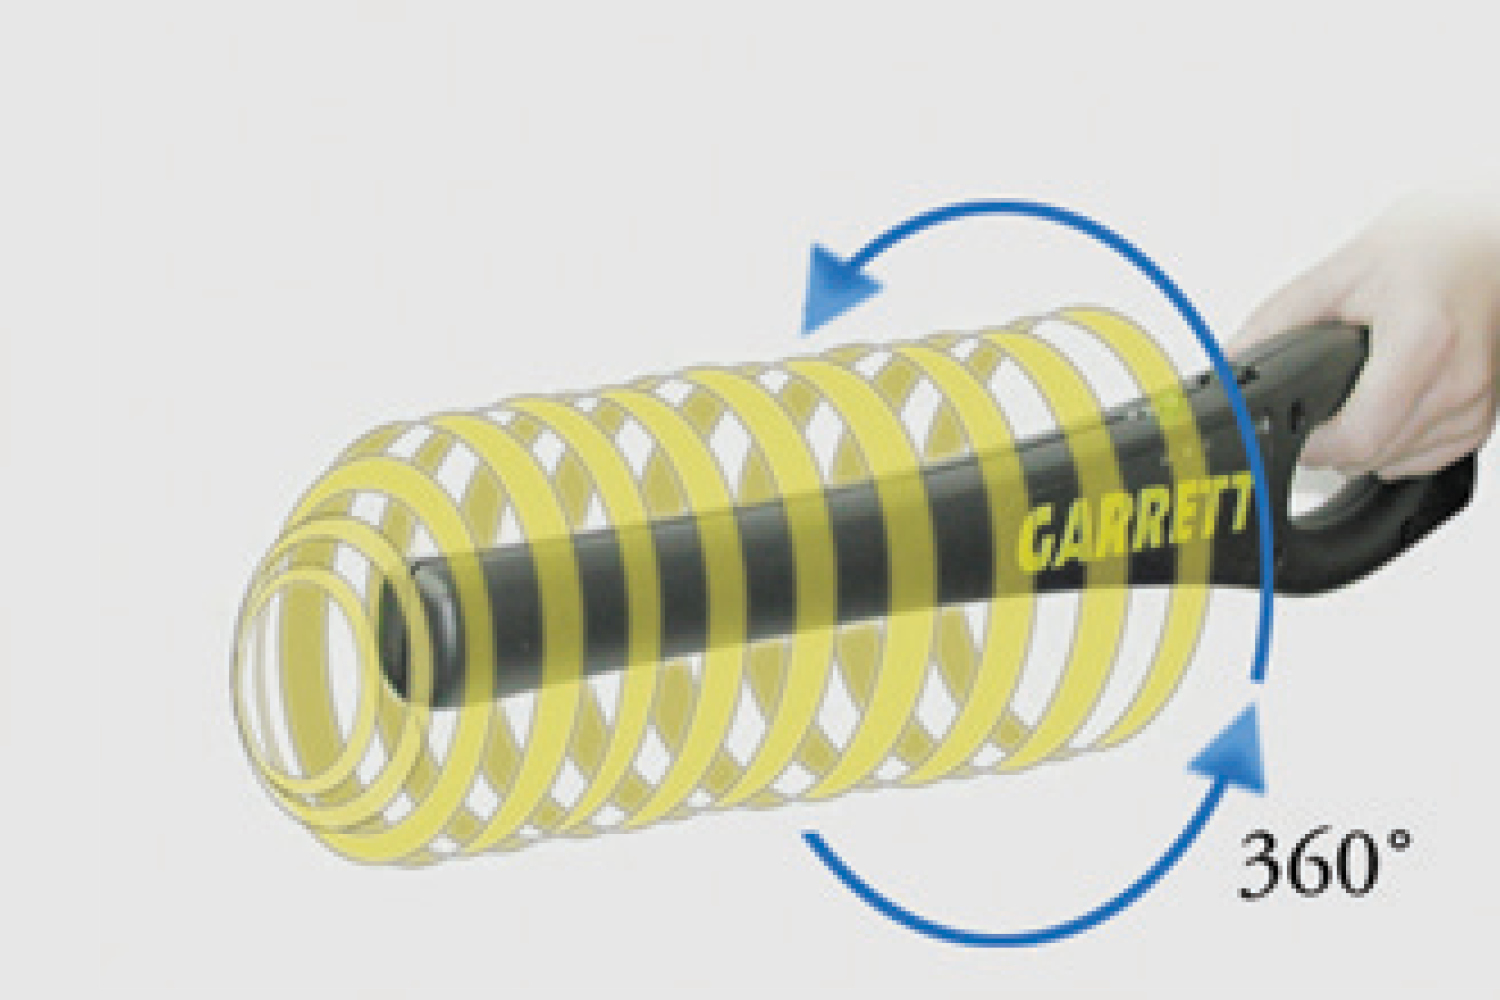 Круговая чувствительность ручного металлодетектора GARRETT SUPER WAND